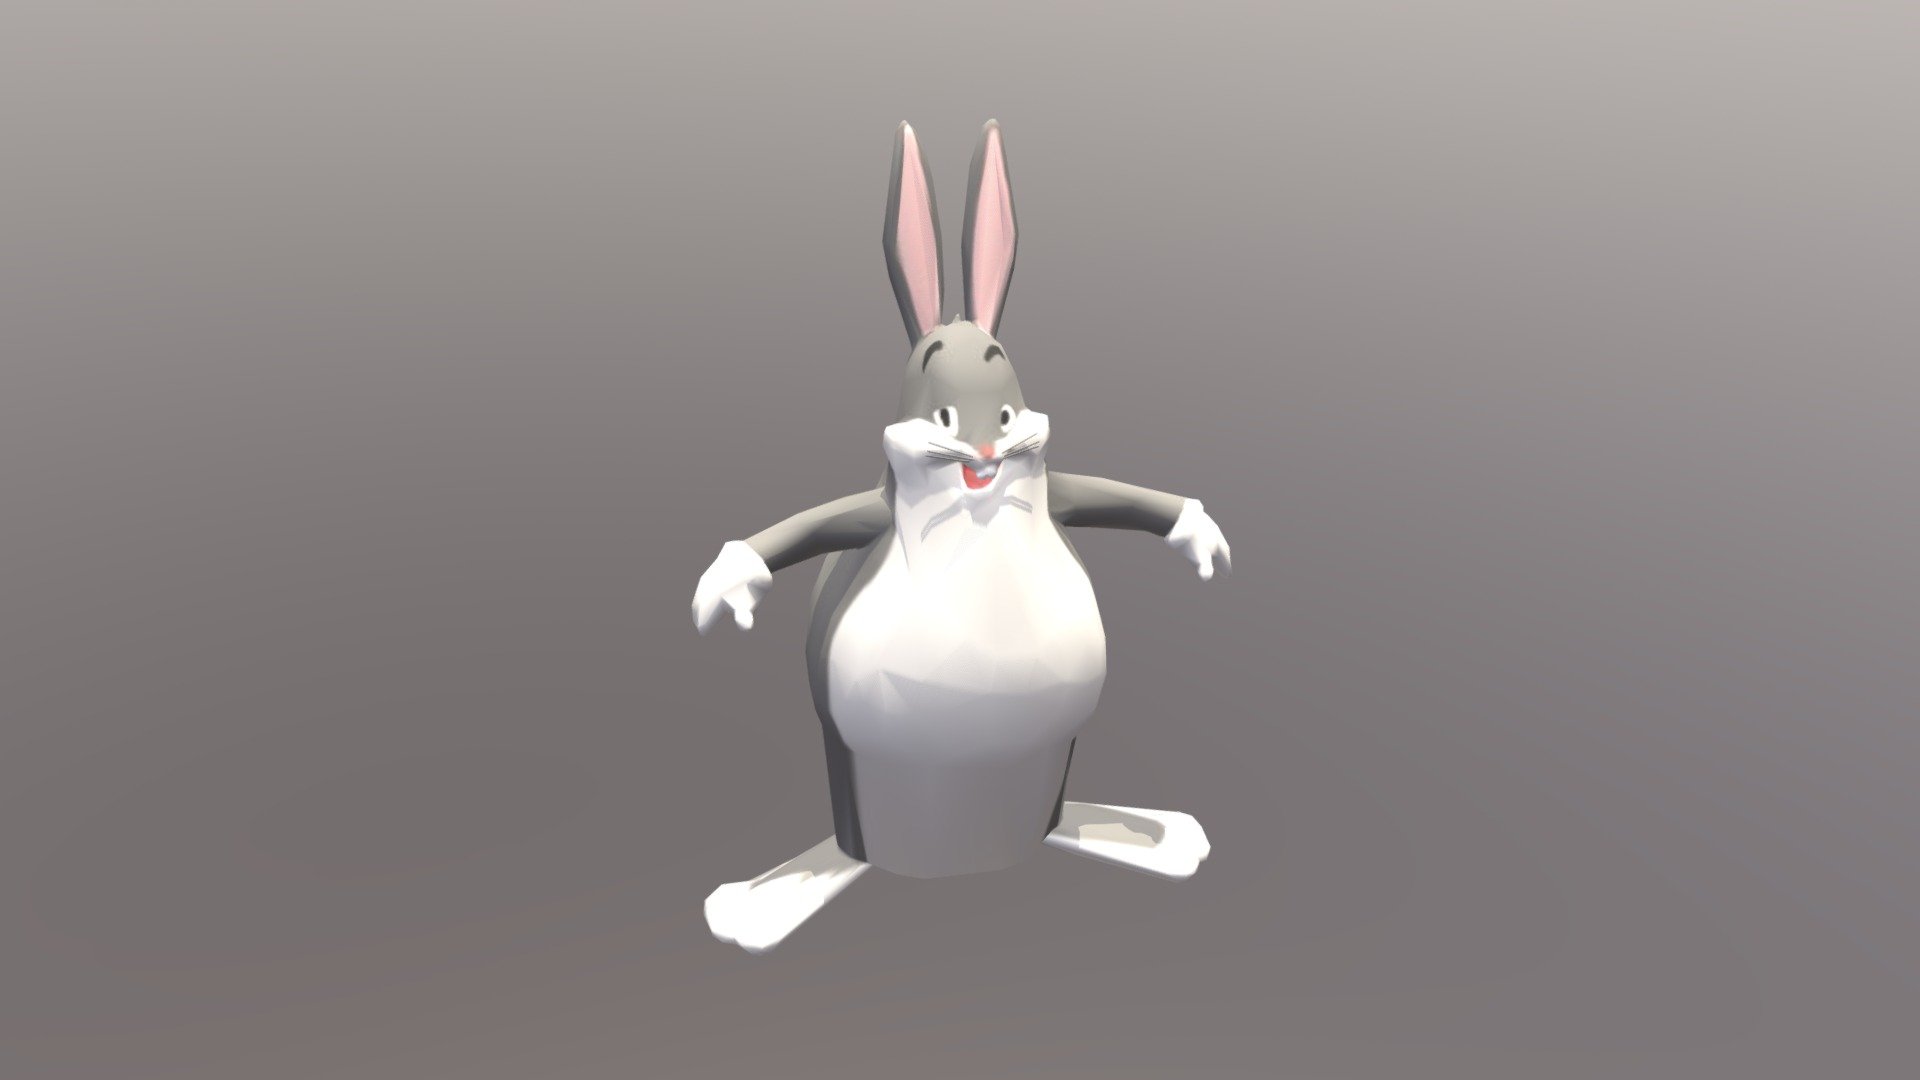 bugs bunny: big chungus (MEME) - Download Free 3D model by L3gap4 (@L3gap4)  [1d10a18]